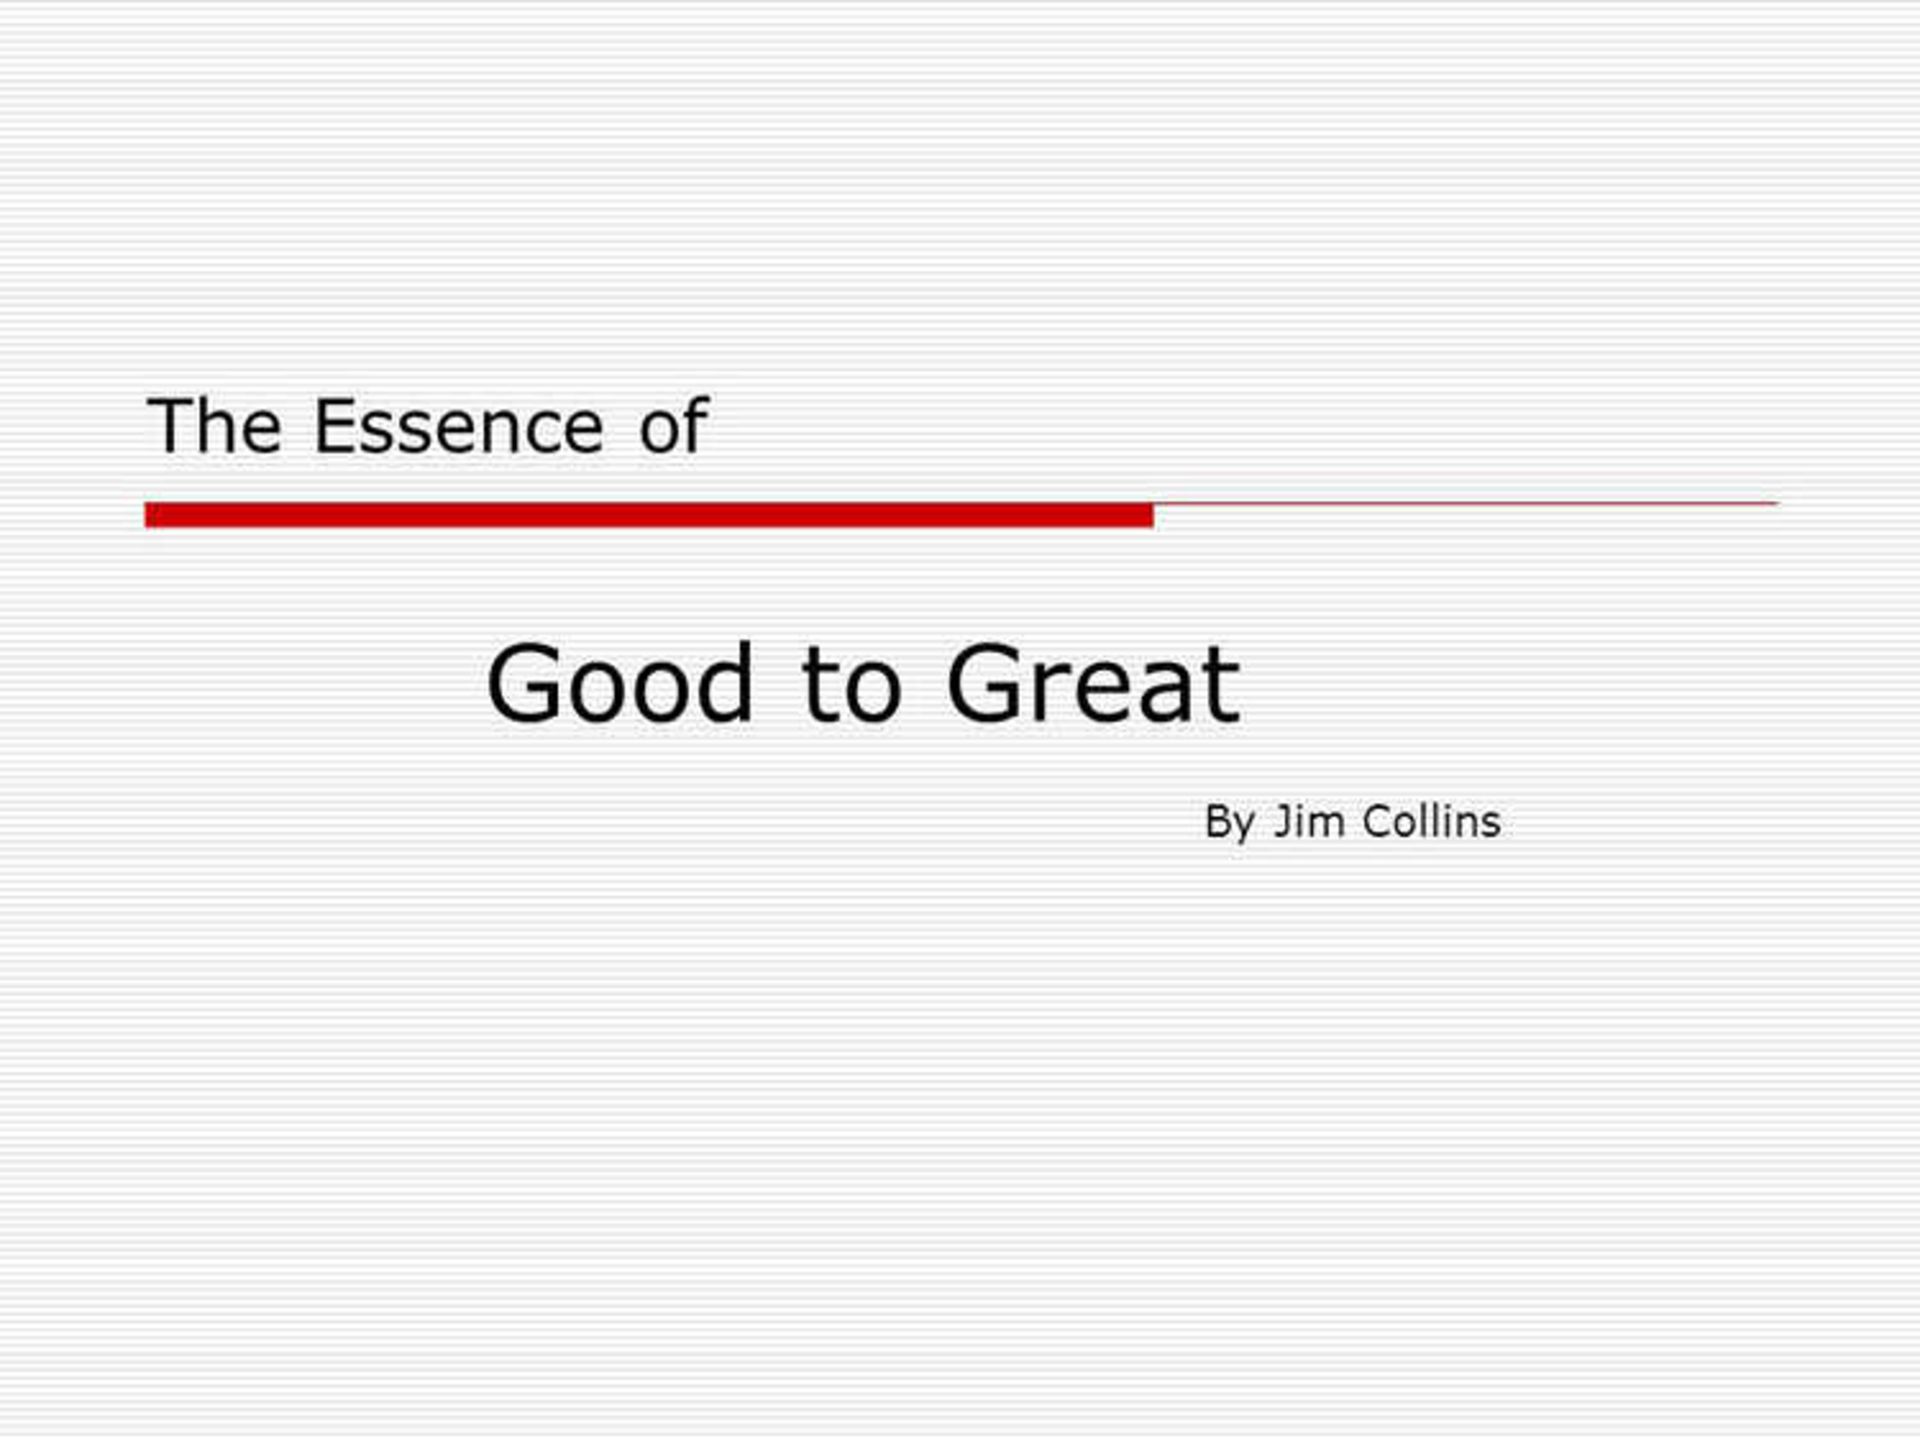 کتاب ازخوب به عالی جیم کالینز/great to good jim collins